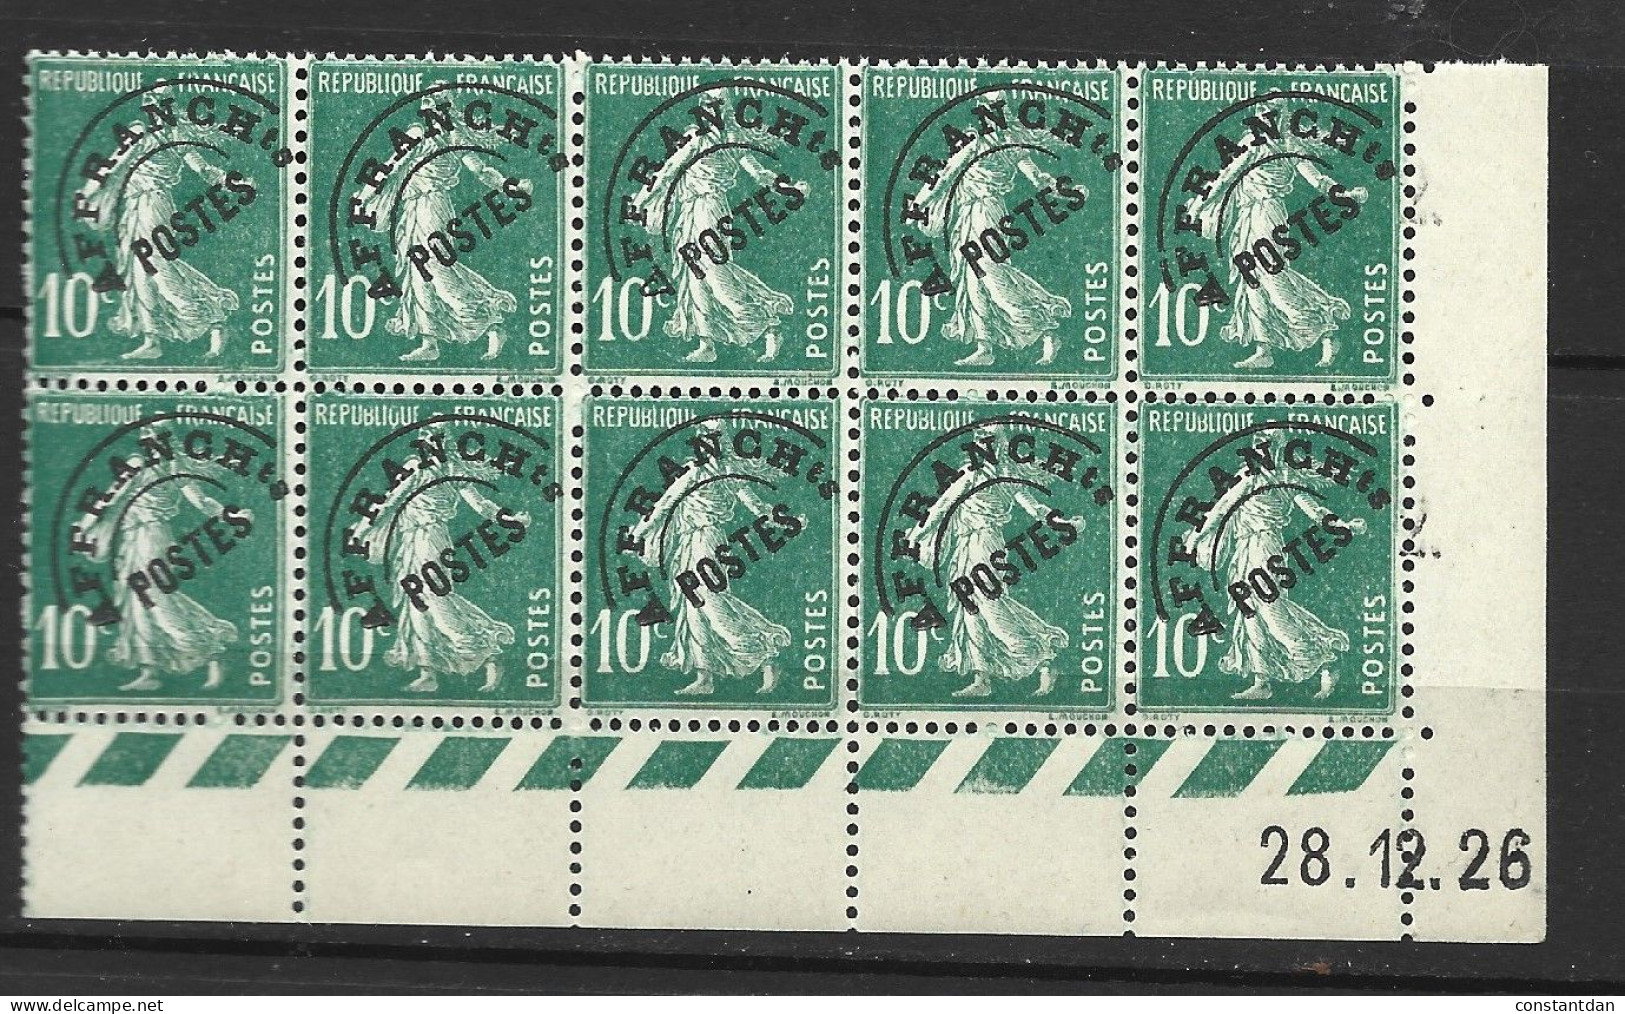 FRANCE PREOB N° 51 10C VERT TYPE SEMEUSE SURCHARGE HAUTE + CD DU 28.12.1926 NEUF SANS CHARNIERE BLOC DE 10 TPS - Unused Stamps